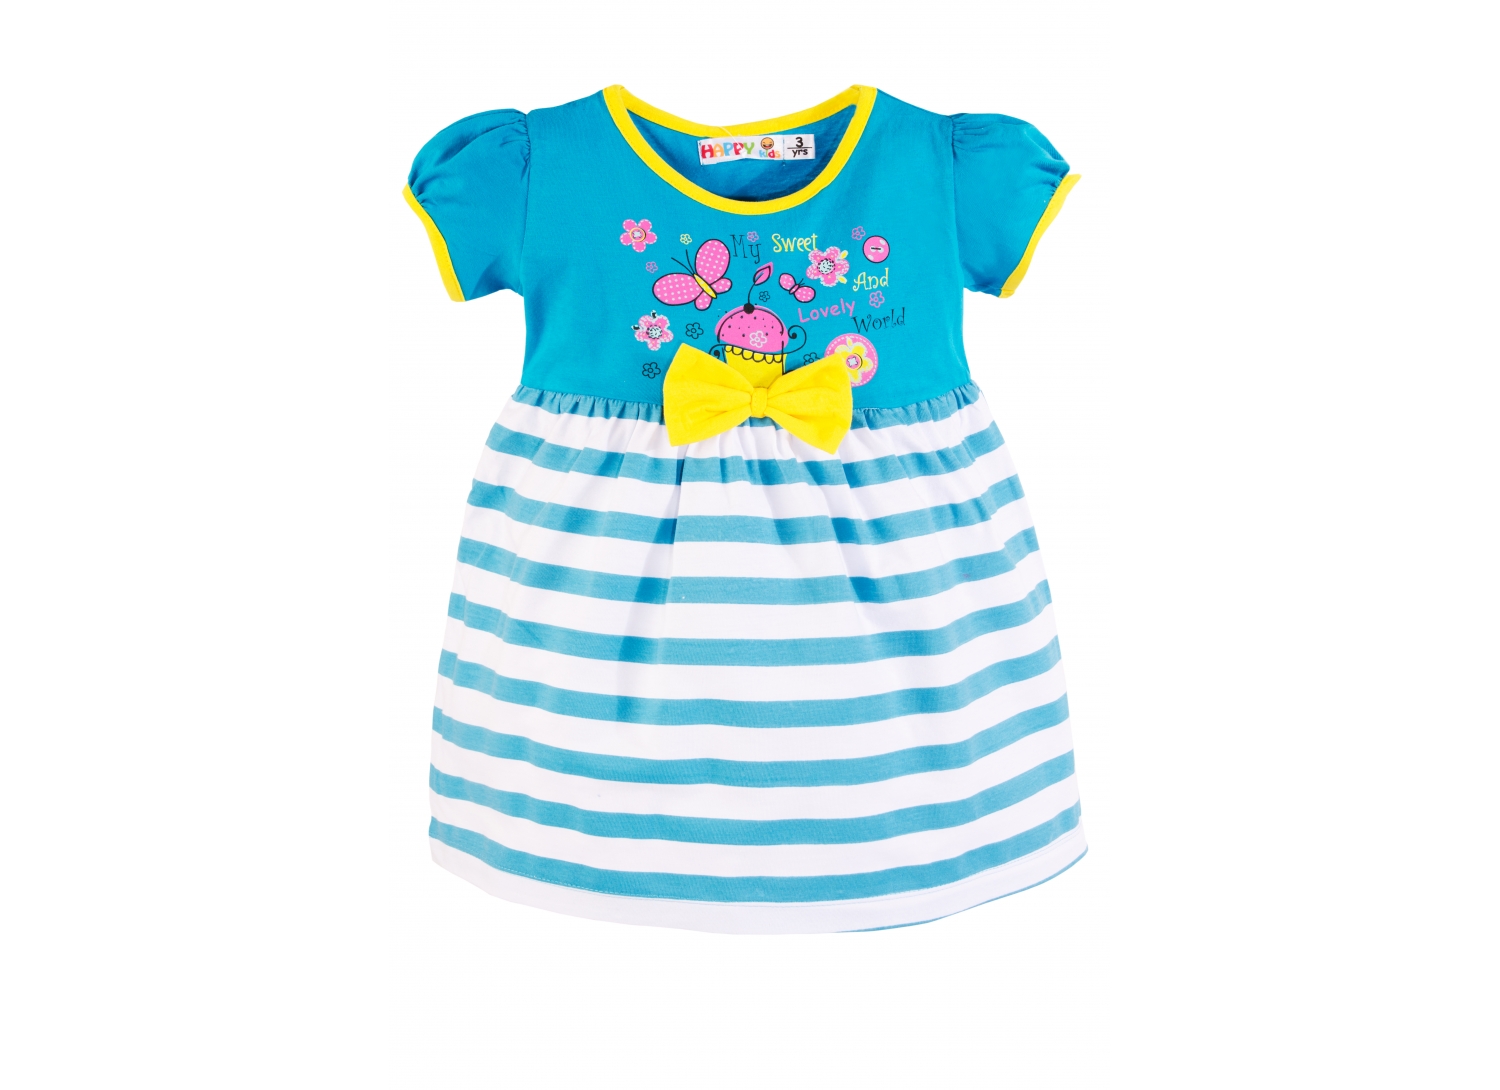 Одежда для детей Happy Kids. Платье для девочки Happy Baby. Bertula Kids платье. Neslim Kids платье разноцветное.